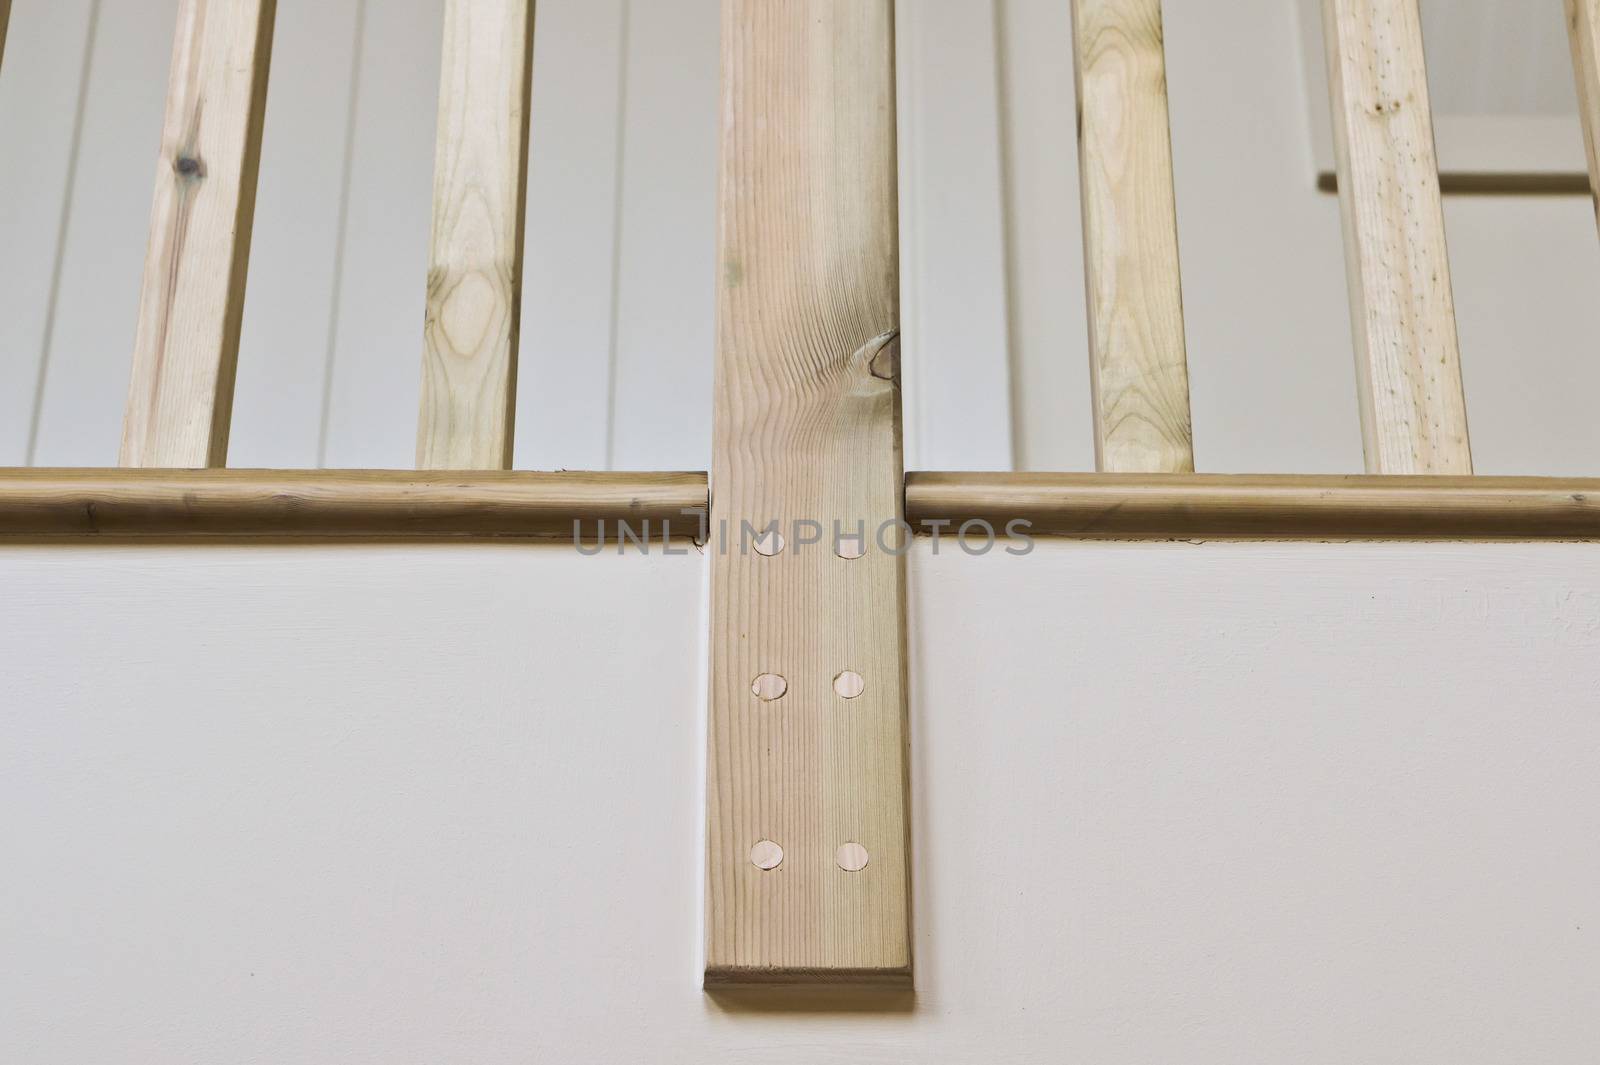 Part of a modern wooden bannister